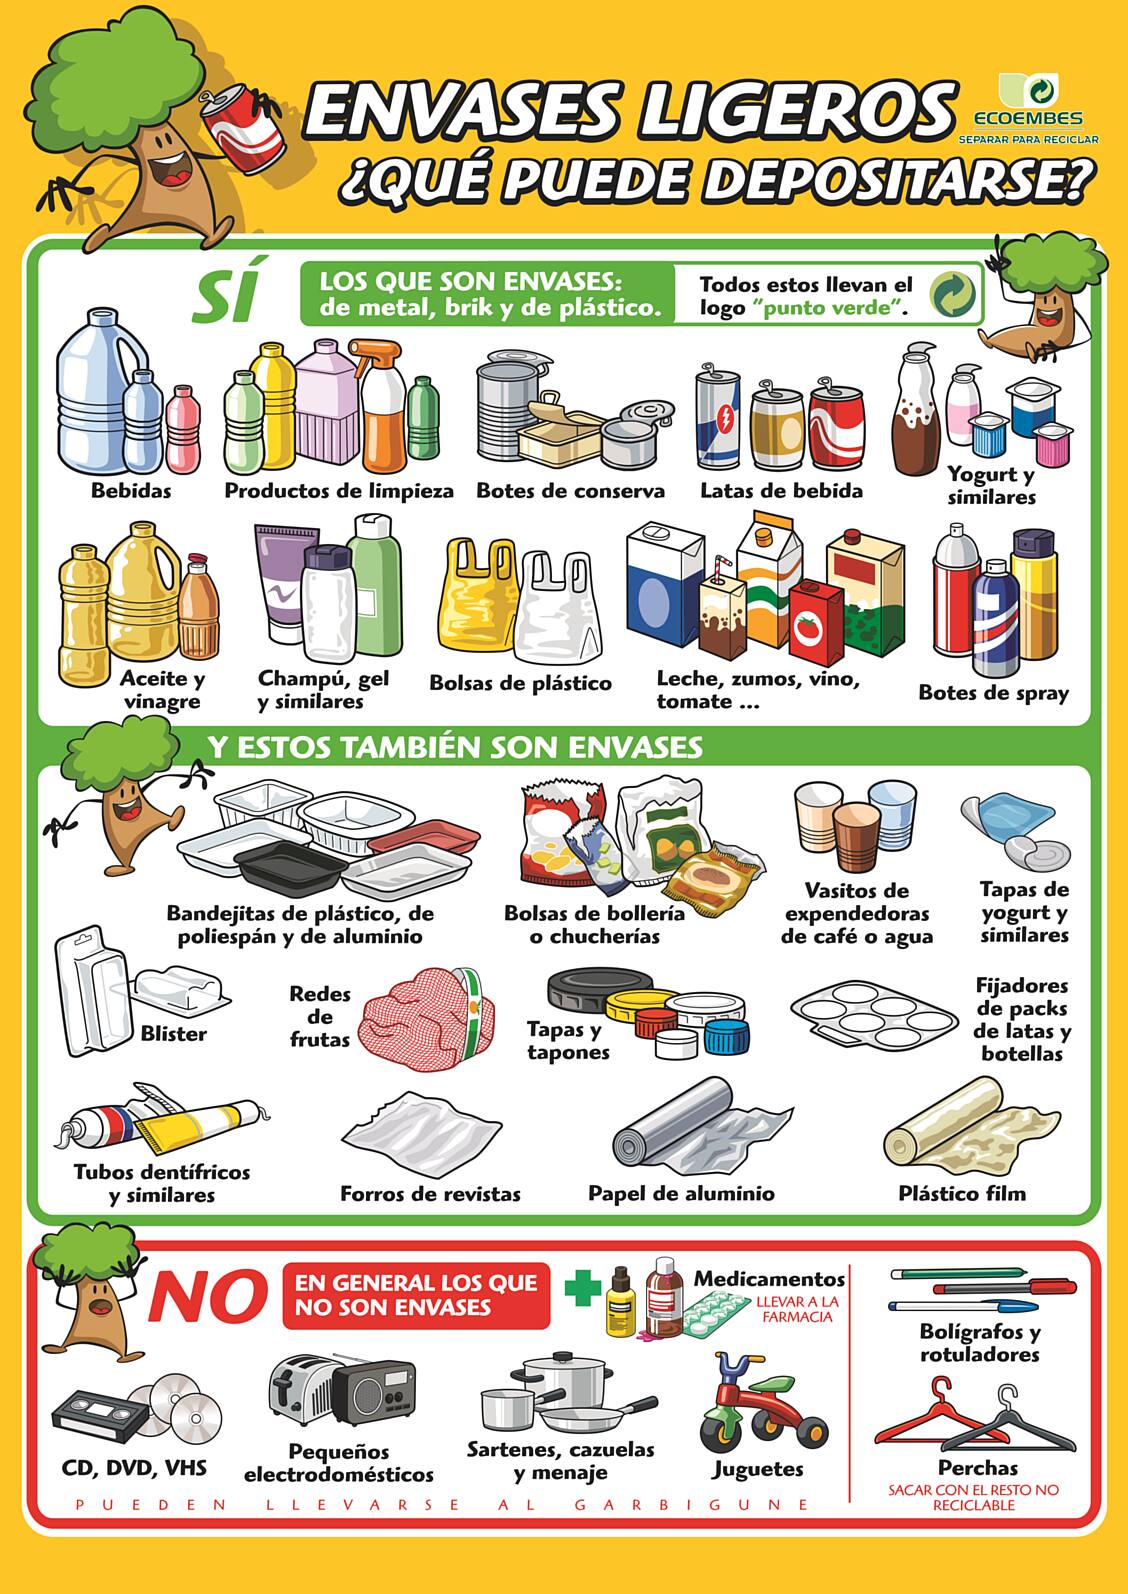 Guía de residuos - Envases ligeros